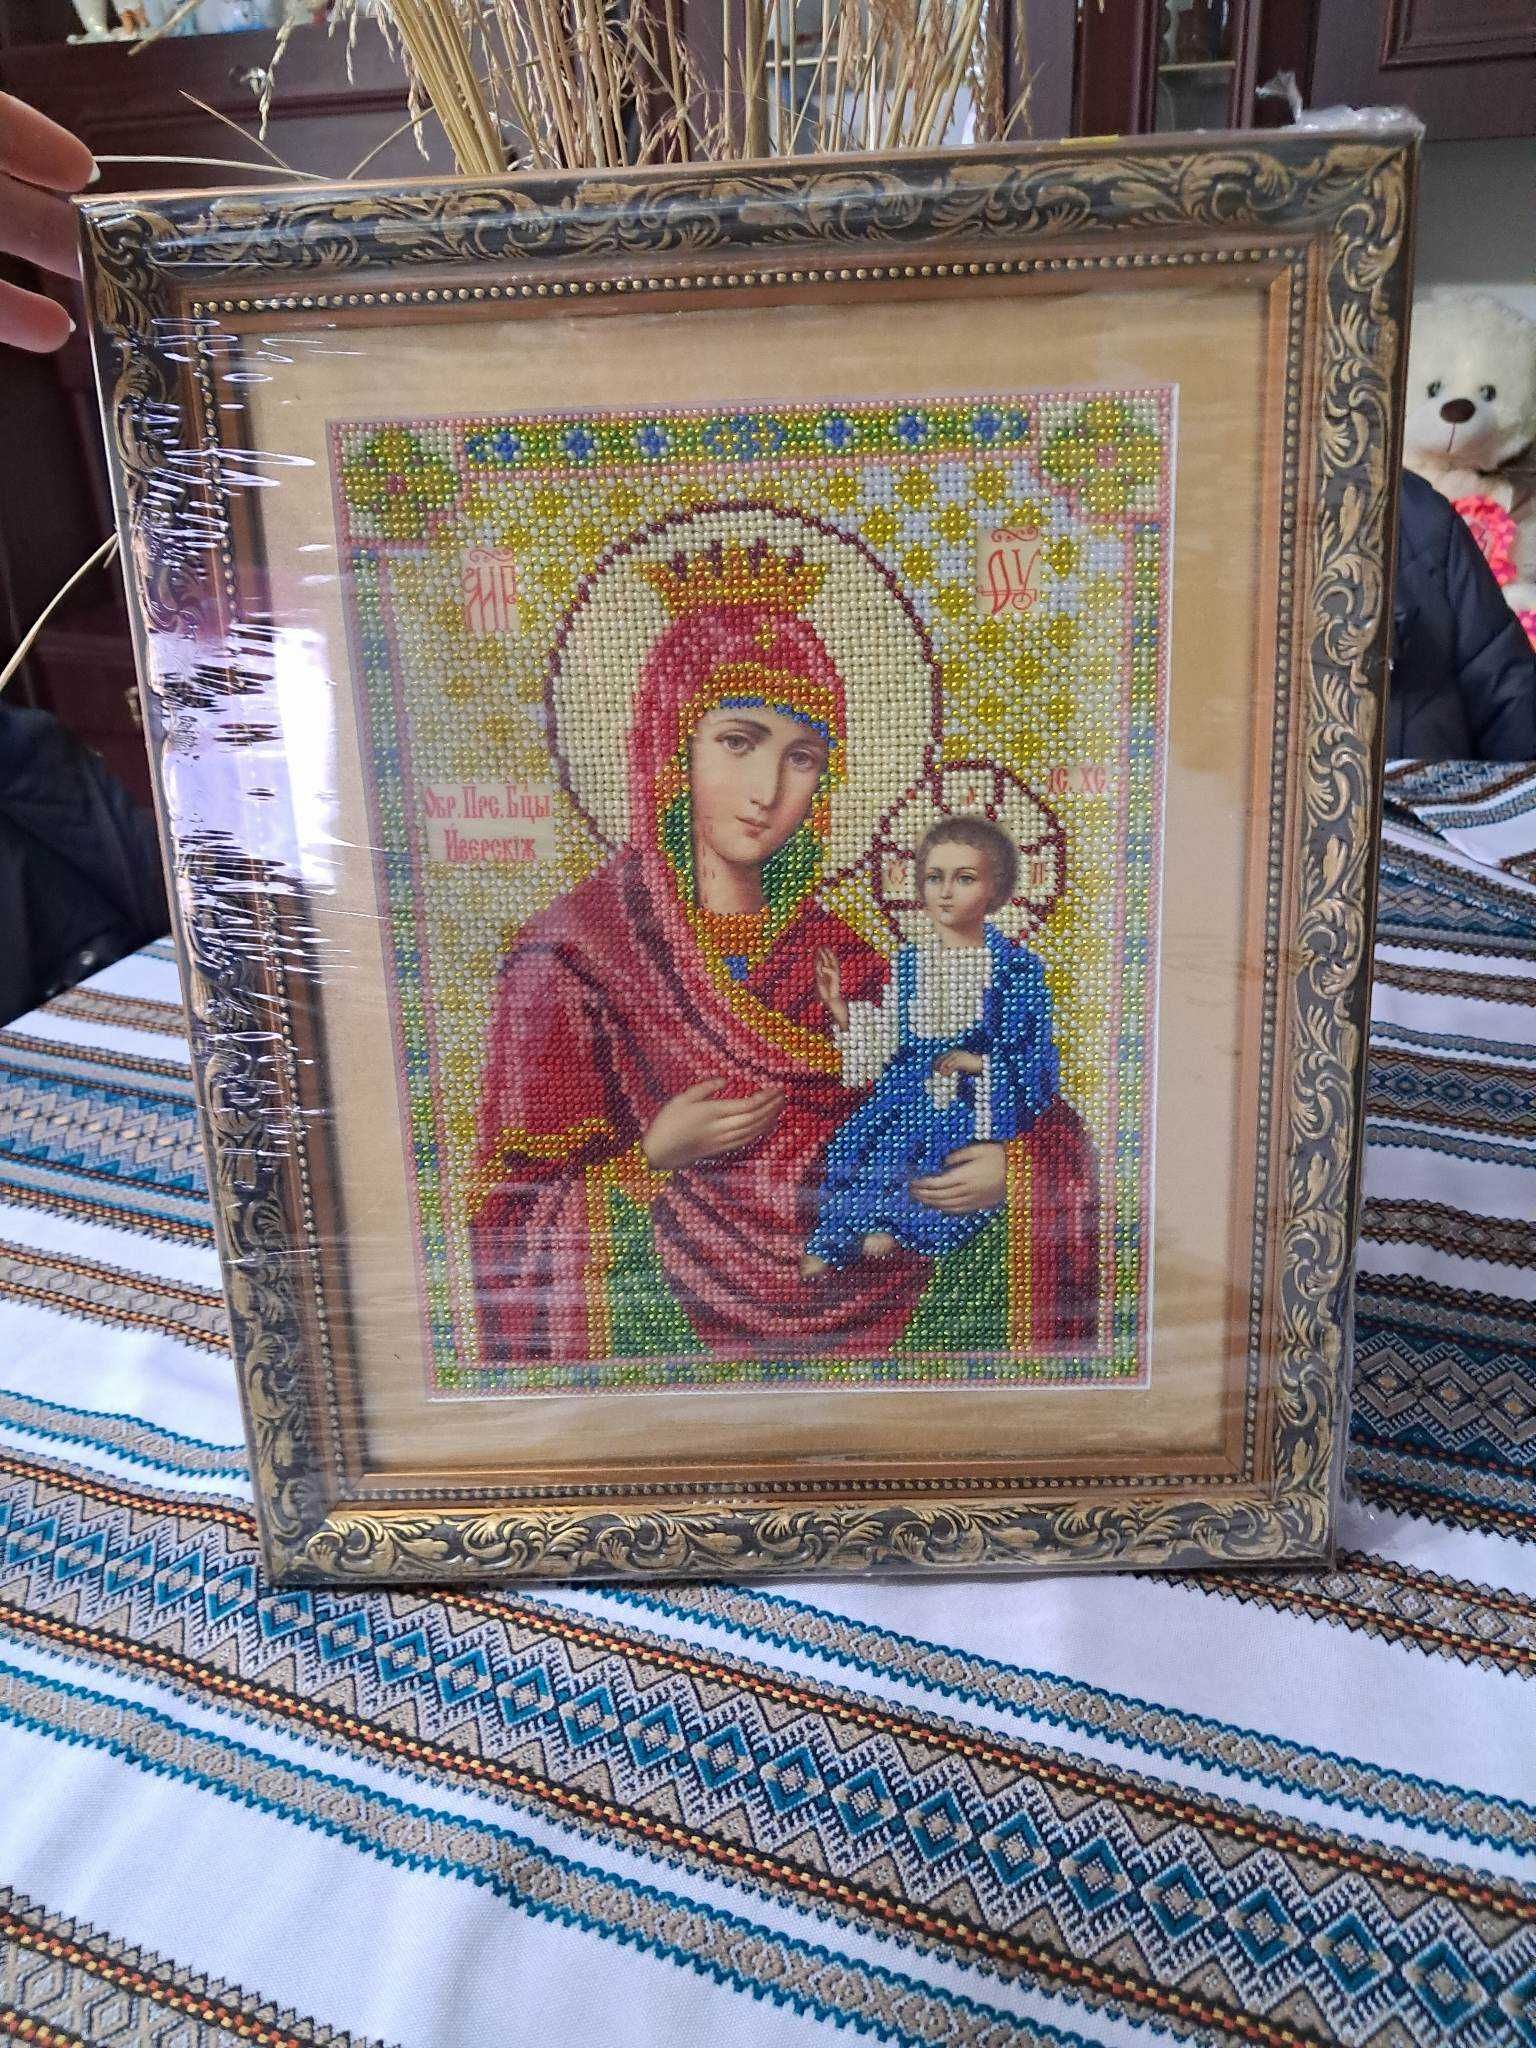 Ікона Божої Матері з Ісусом